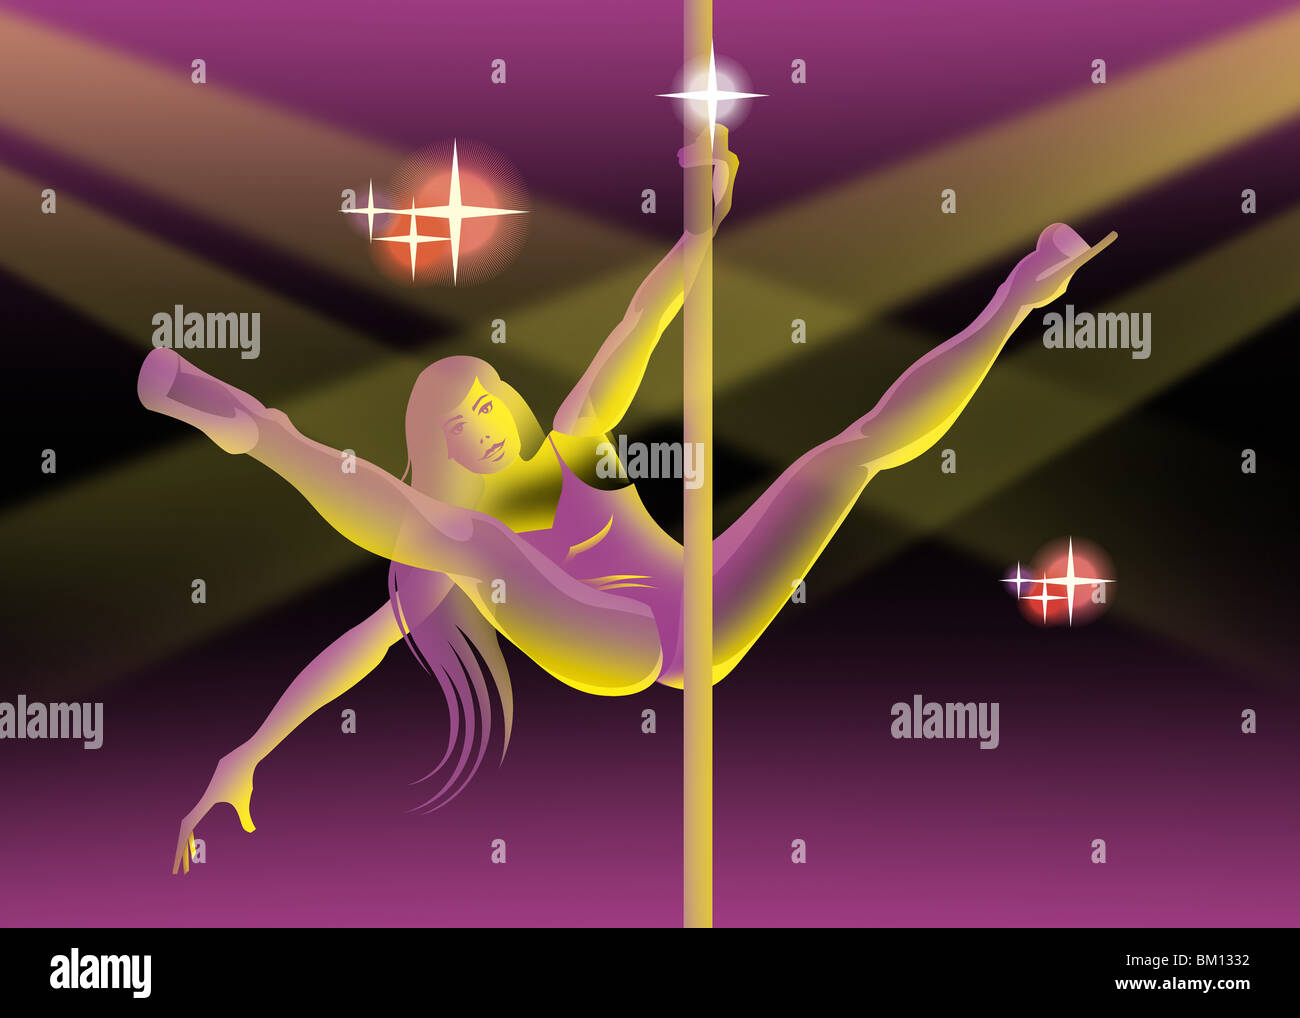 Woman pole dancing in a nightclub Stock Photo